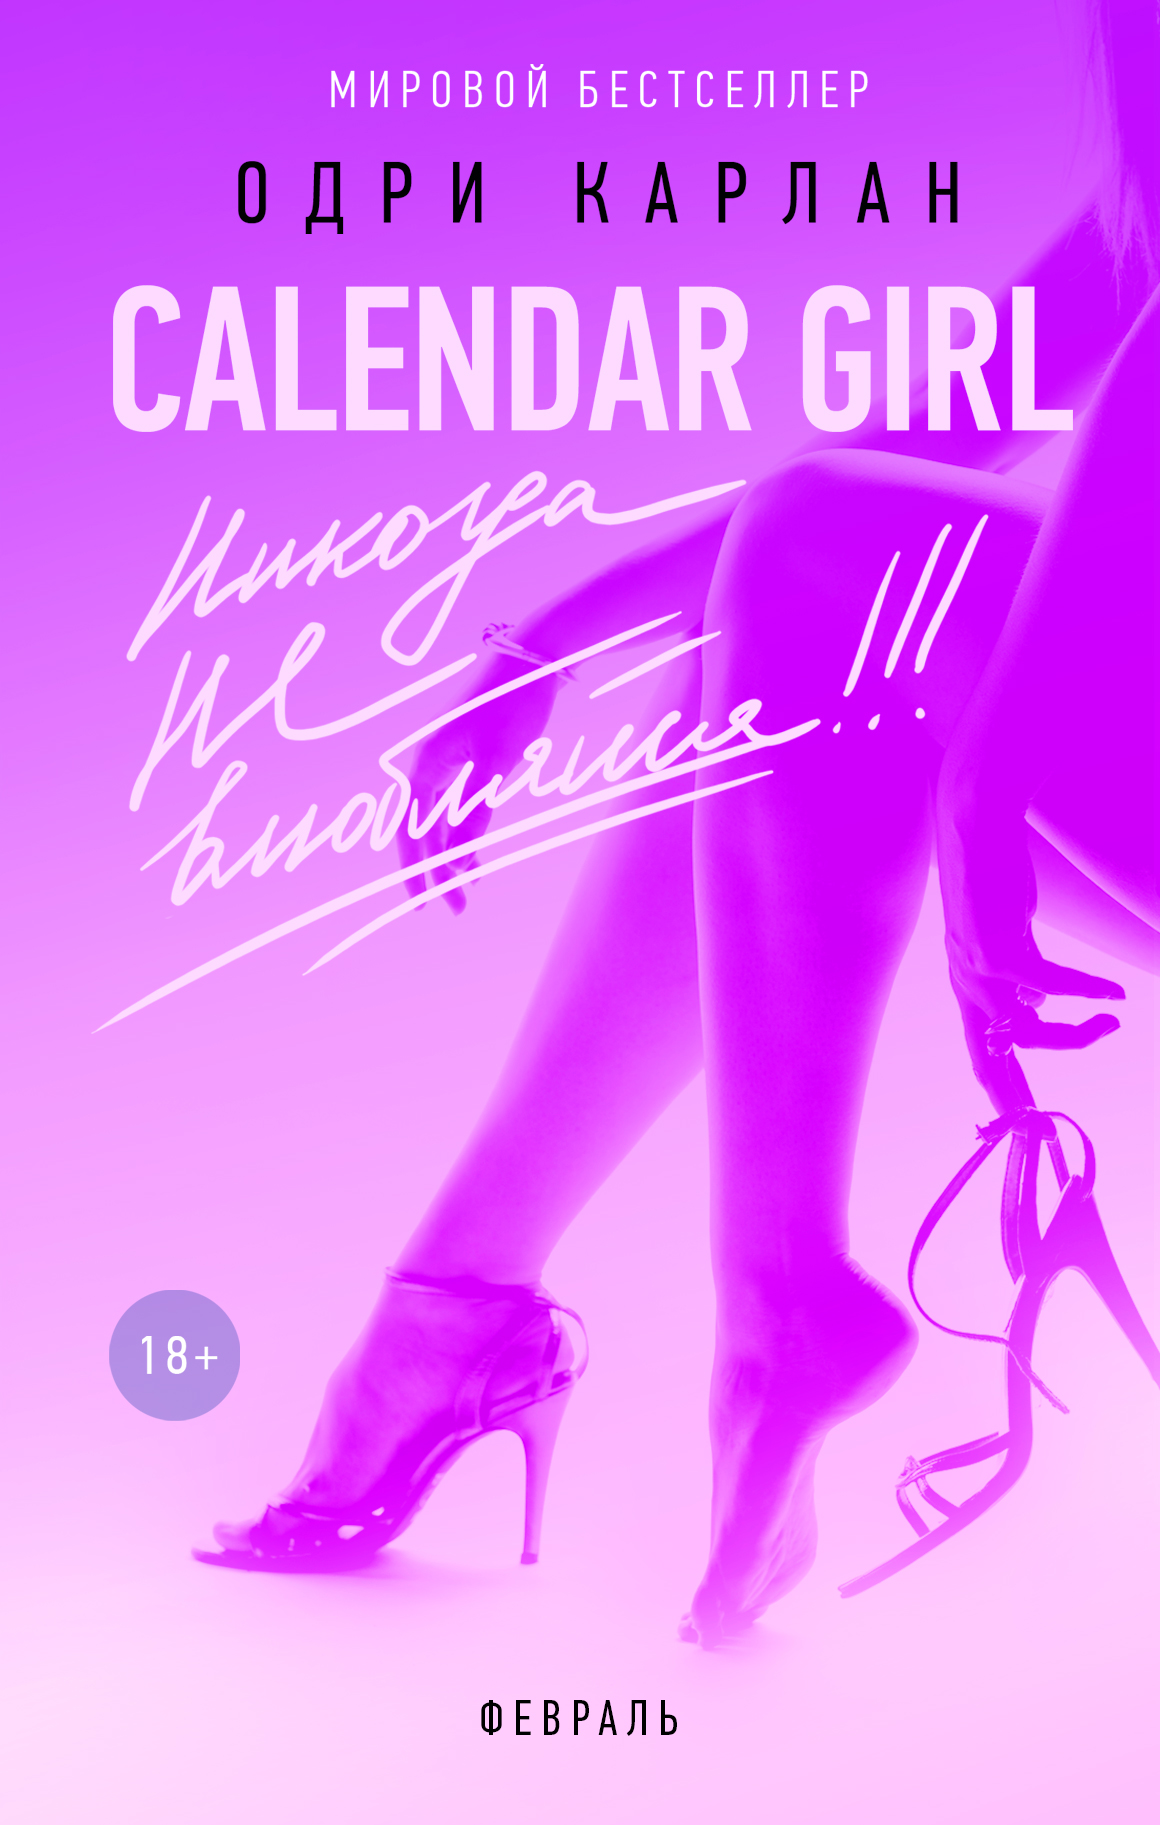 Calendar Girl.Никогда не влюбляйся! Февраль